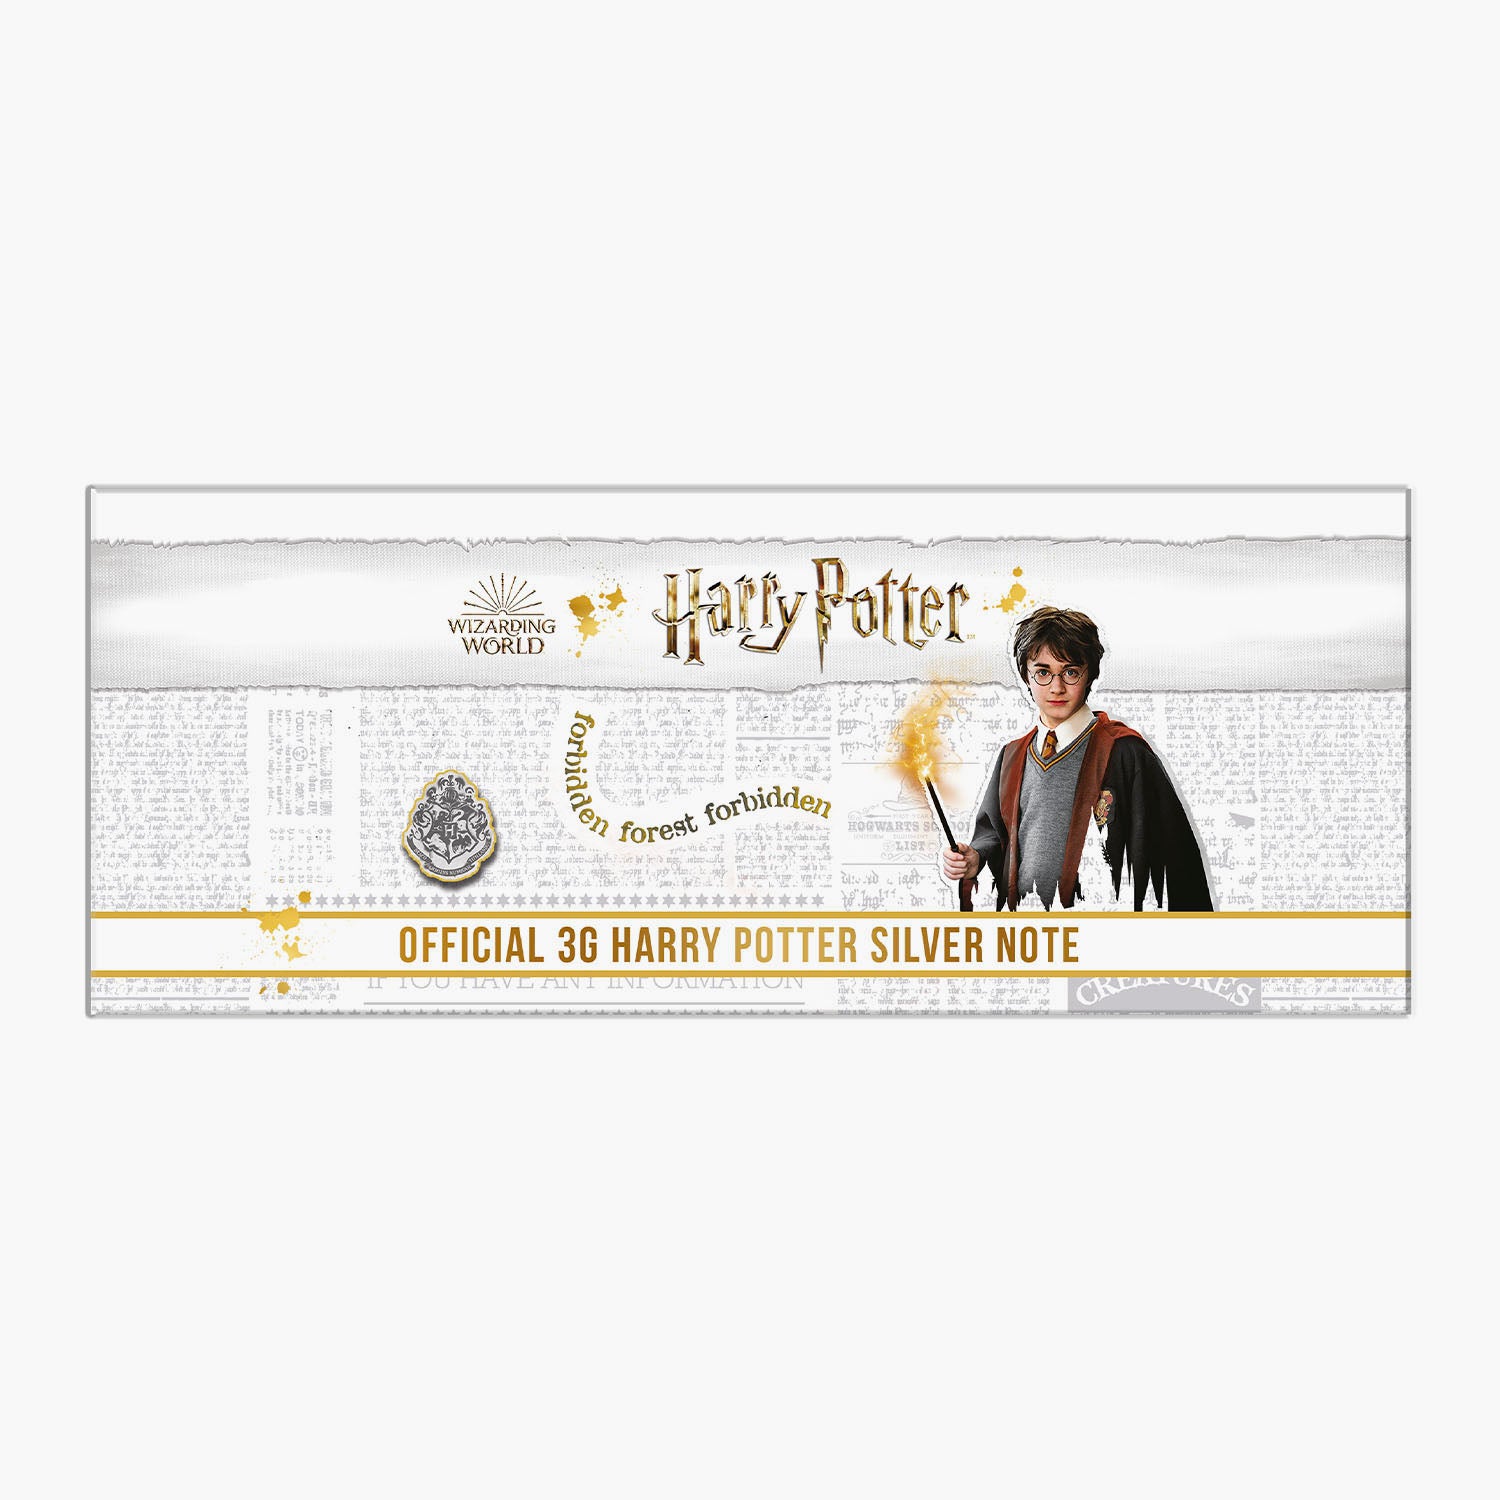 Le billet de cours légal officiel Harry Potter en argent pur